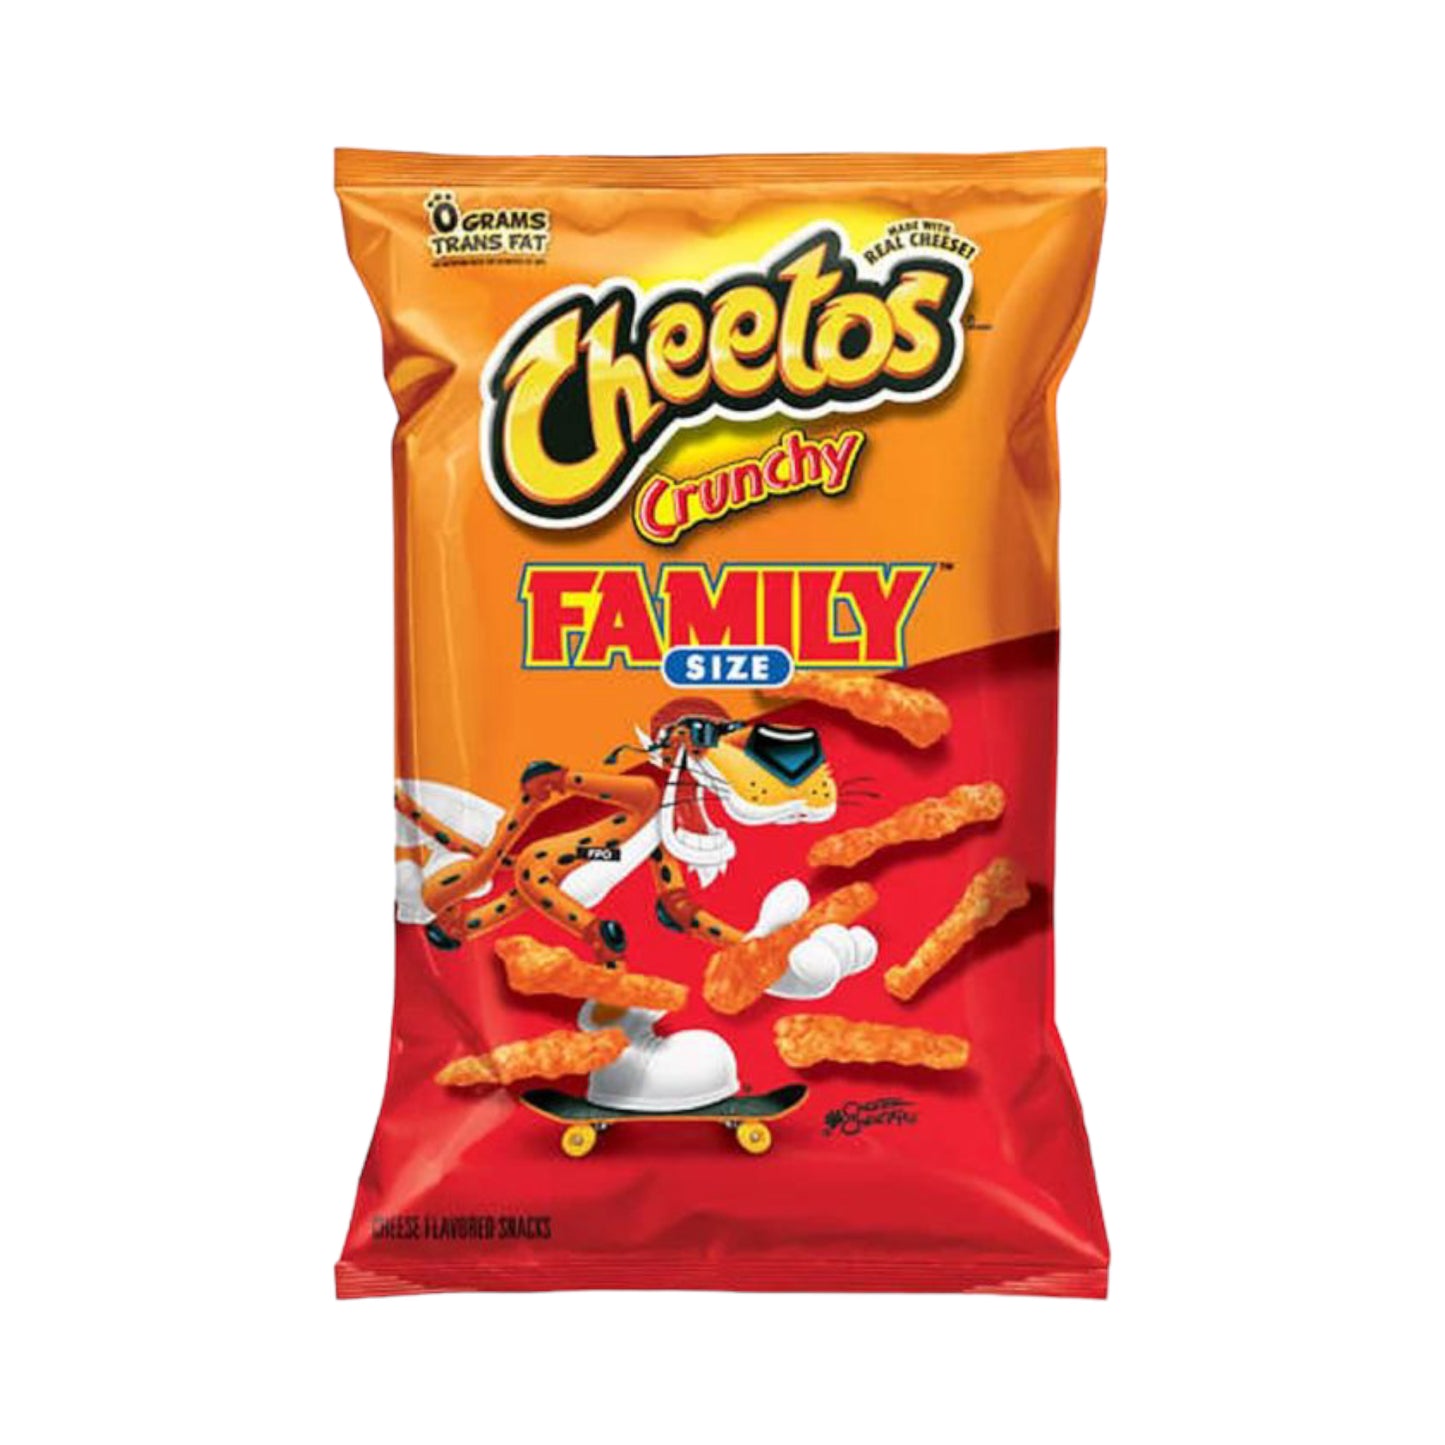 Cheetos Crunchy Original - Family Size - 20.5oz (581.1g)